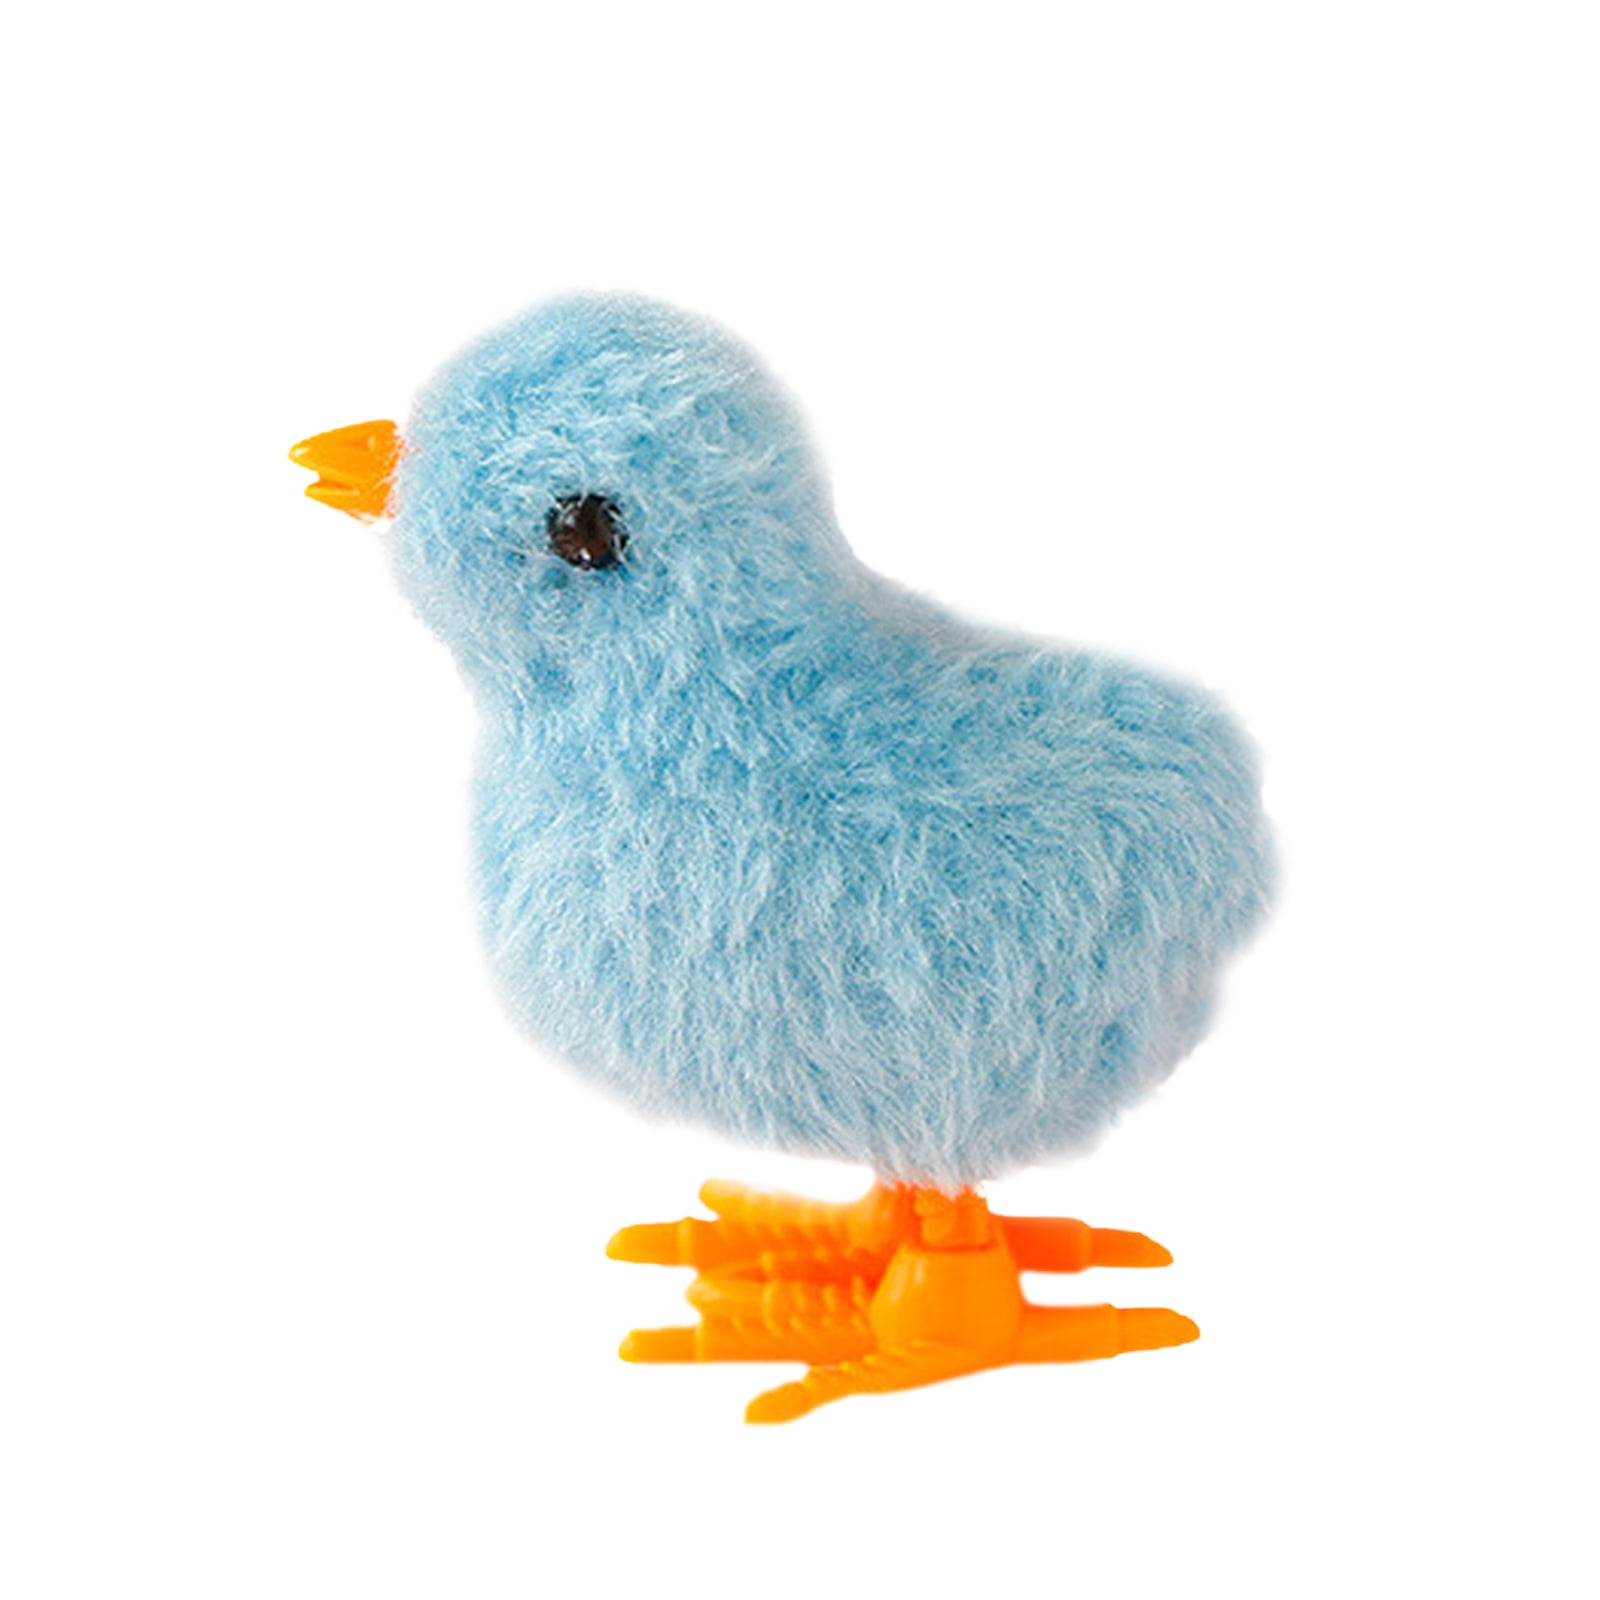 Lovely Fluffy Plush Bird Clockwork Toys Table Decor Kids Gifts Easter Favors 